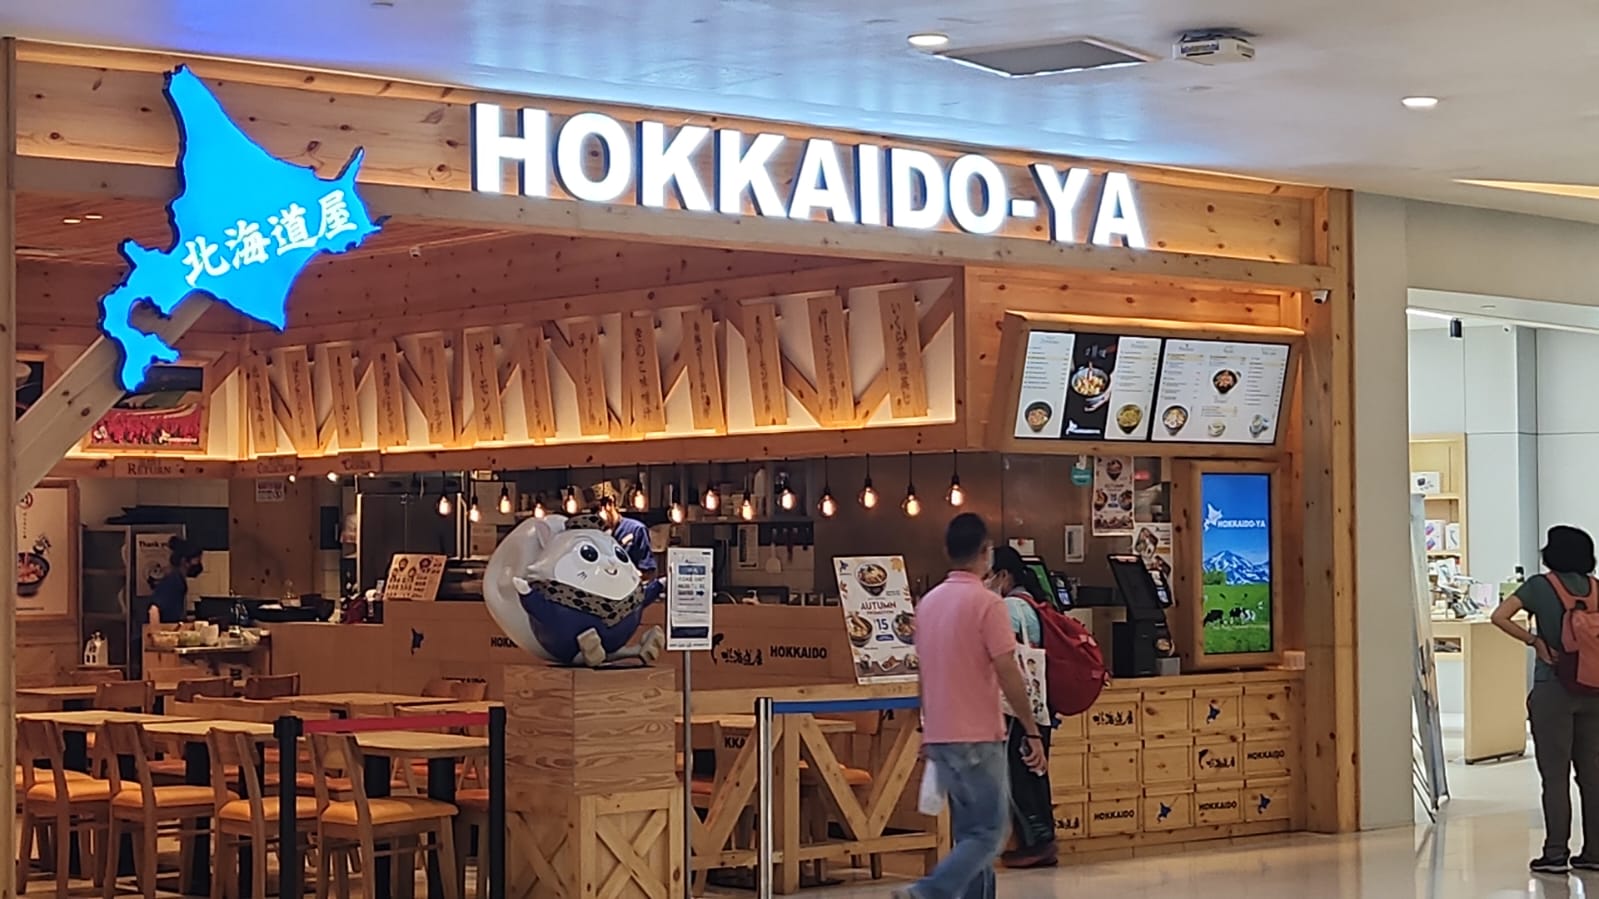 Hokkaido-Ya - Storefront